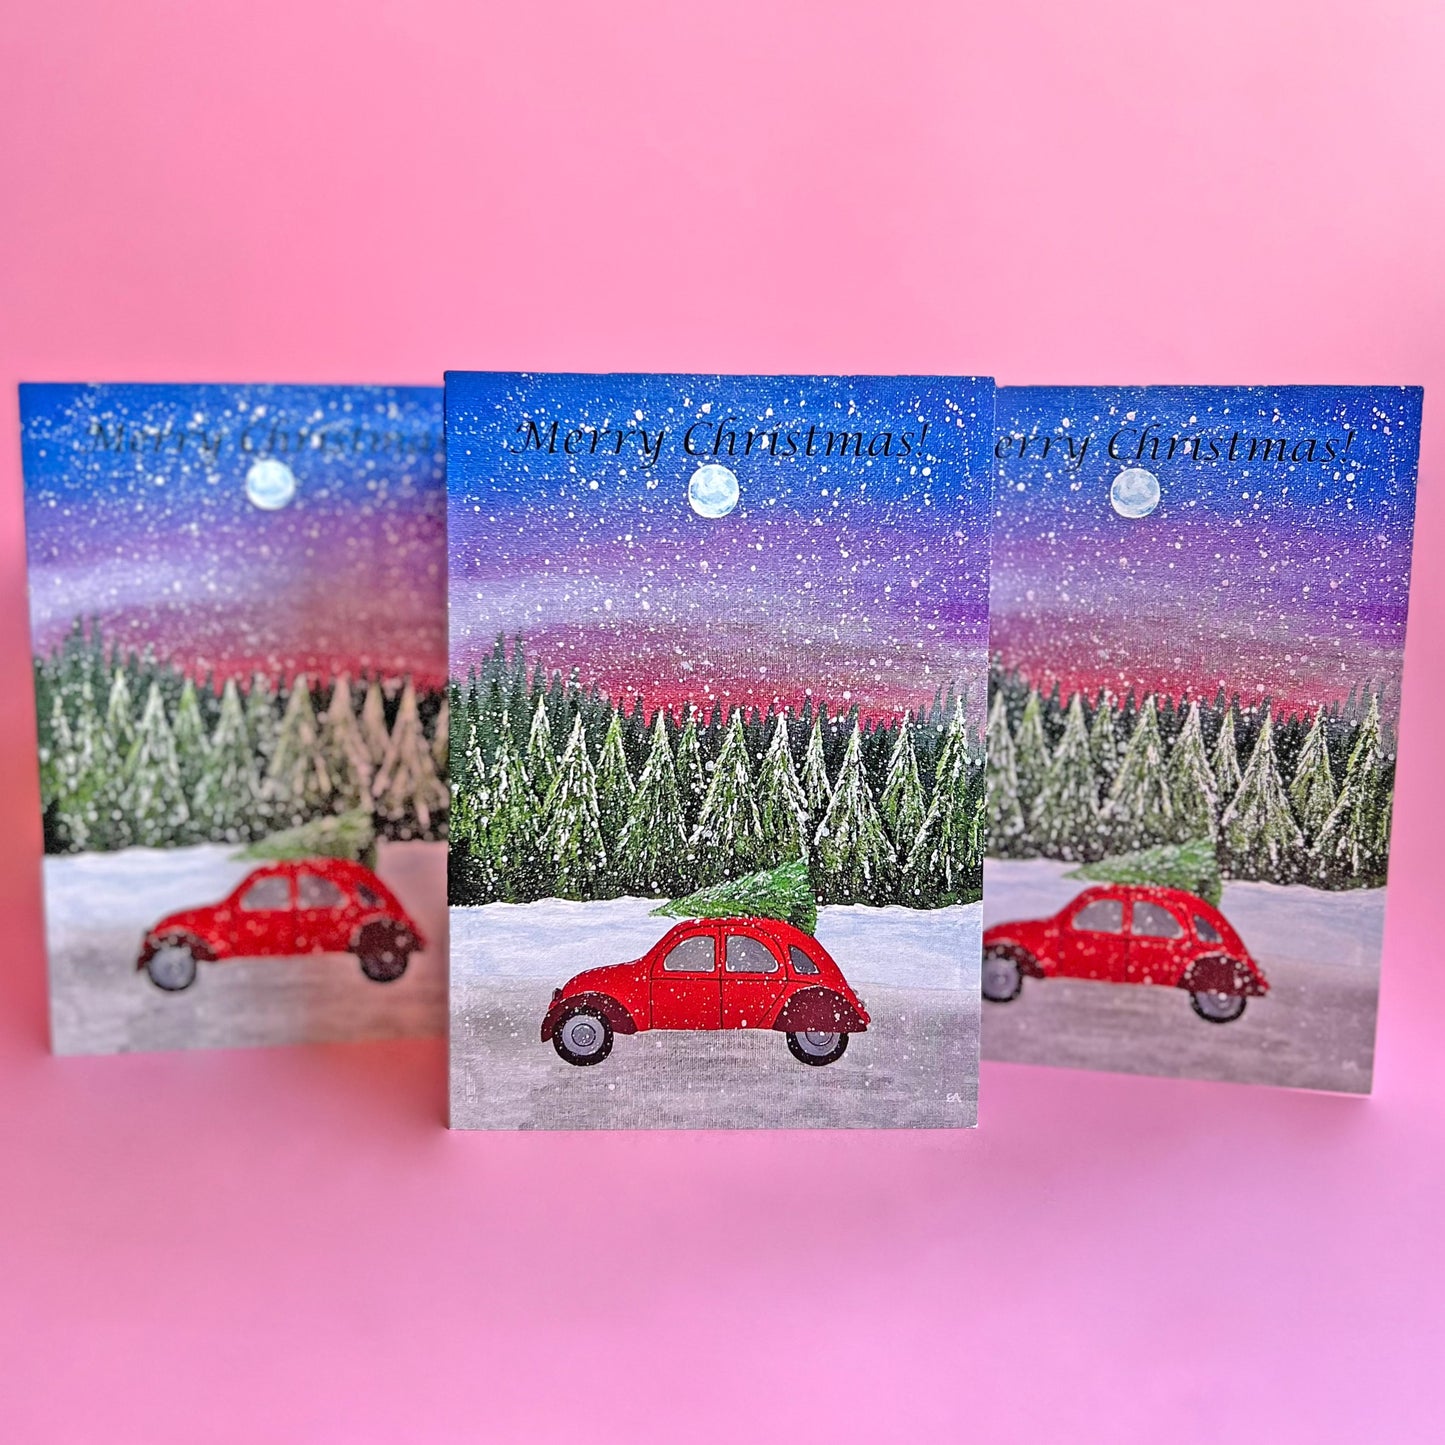 Red Car Christmas Card, Acrylic Painting Christmas Card